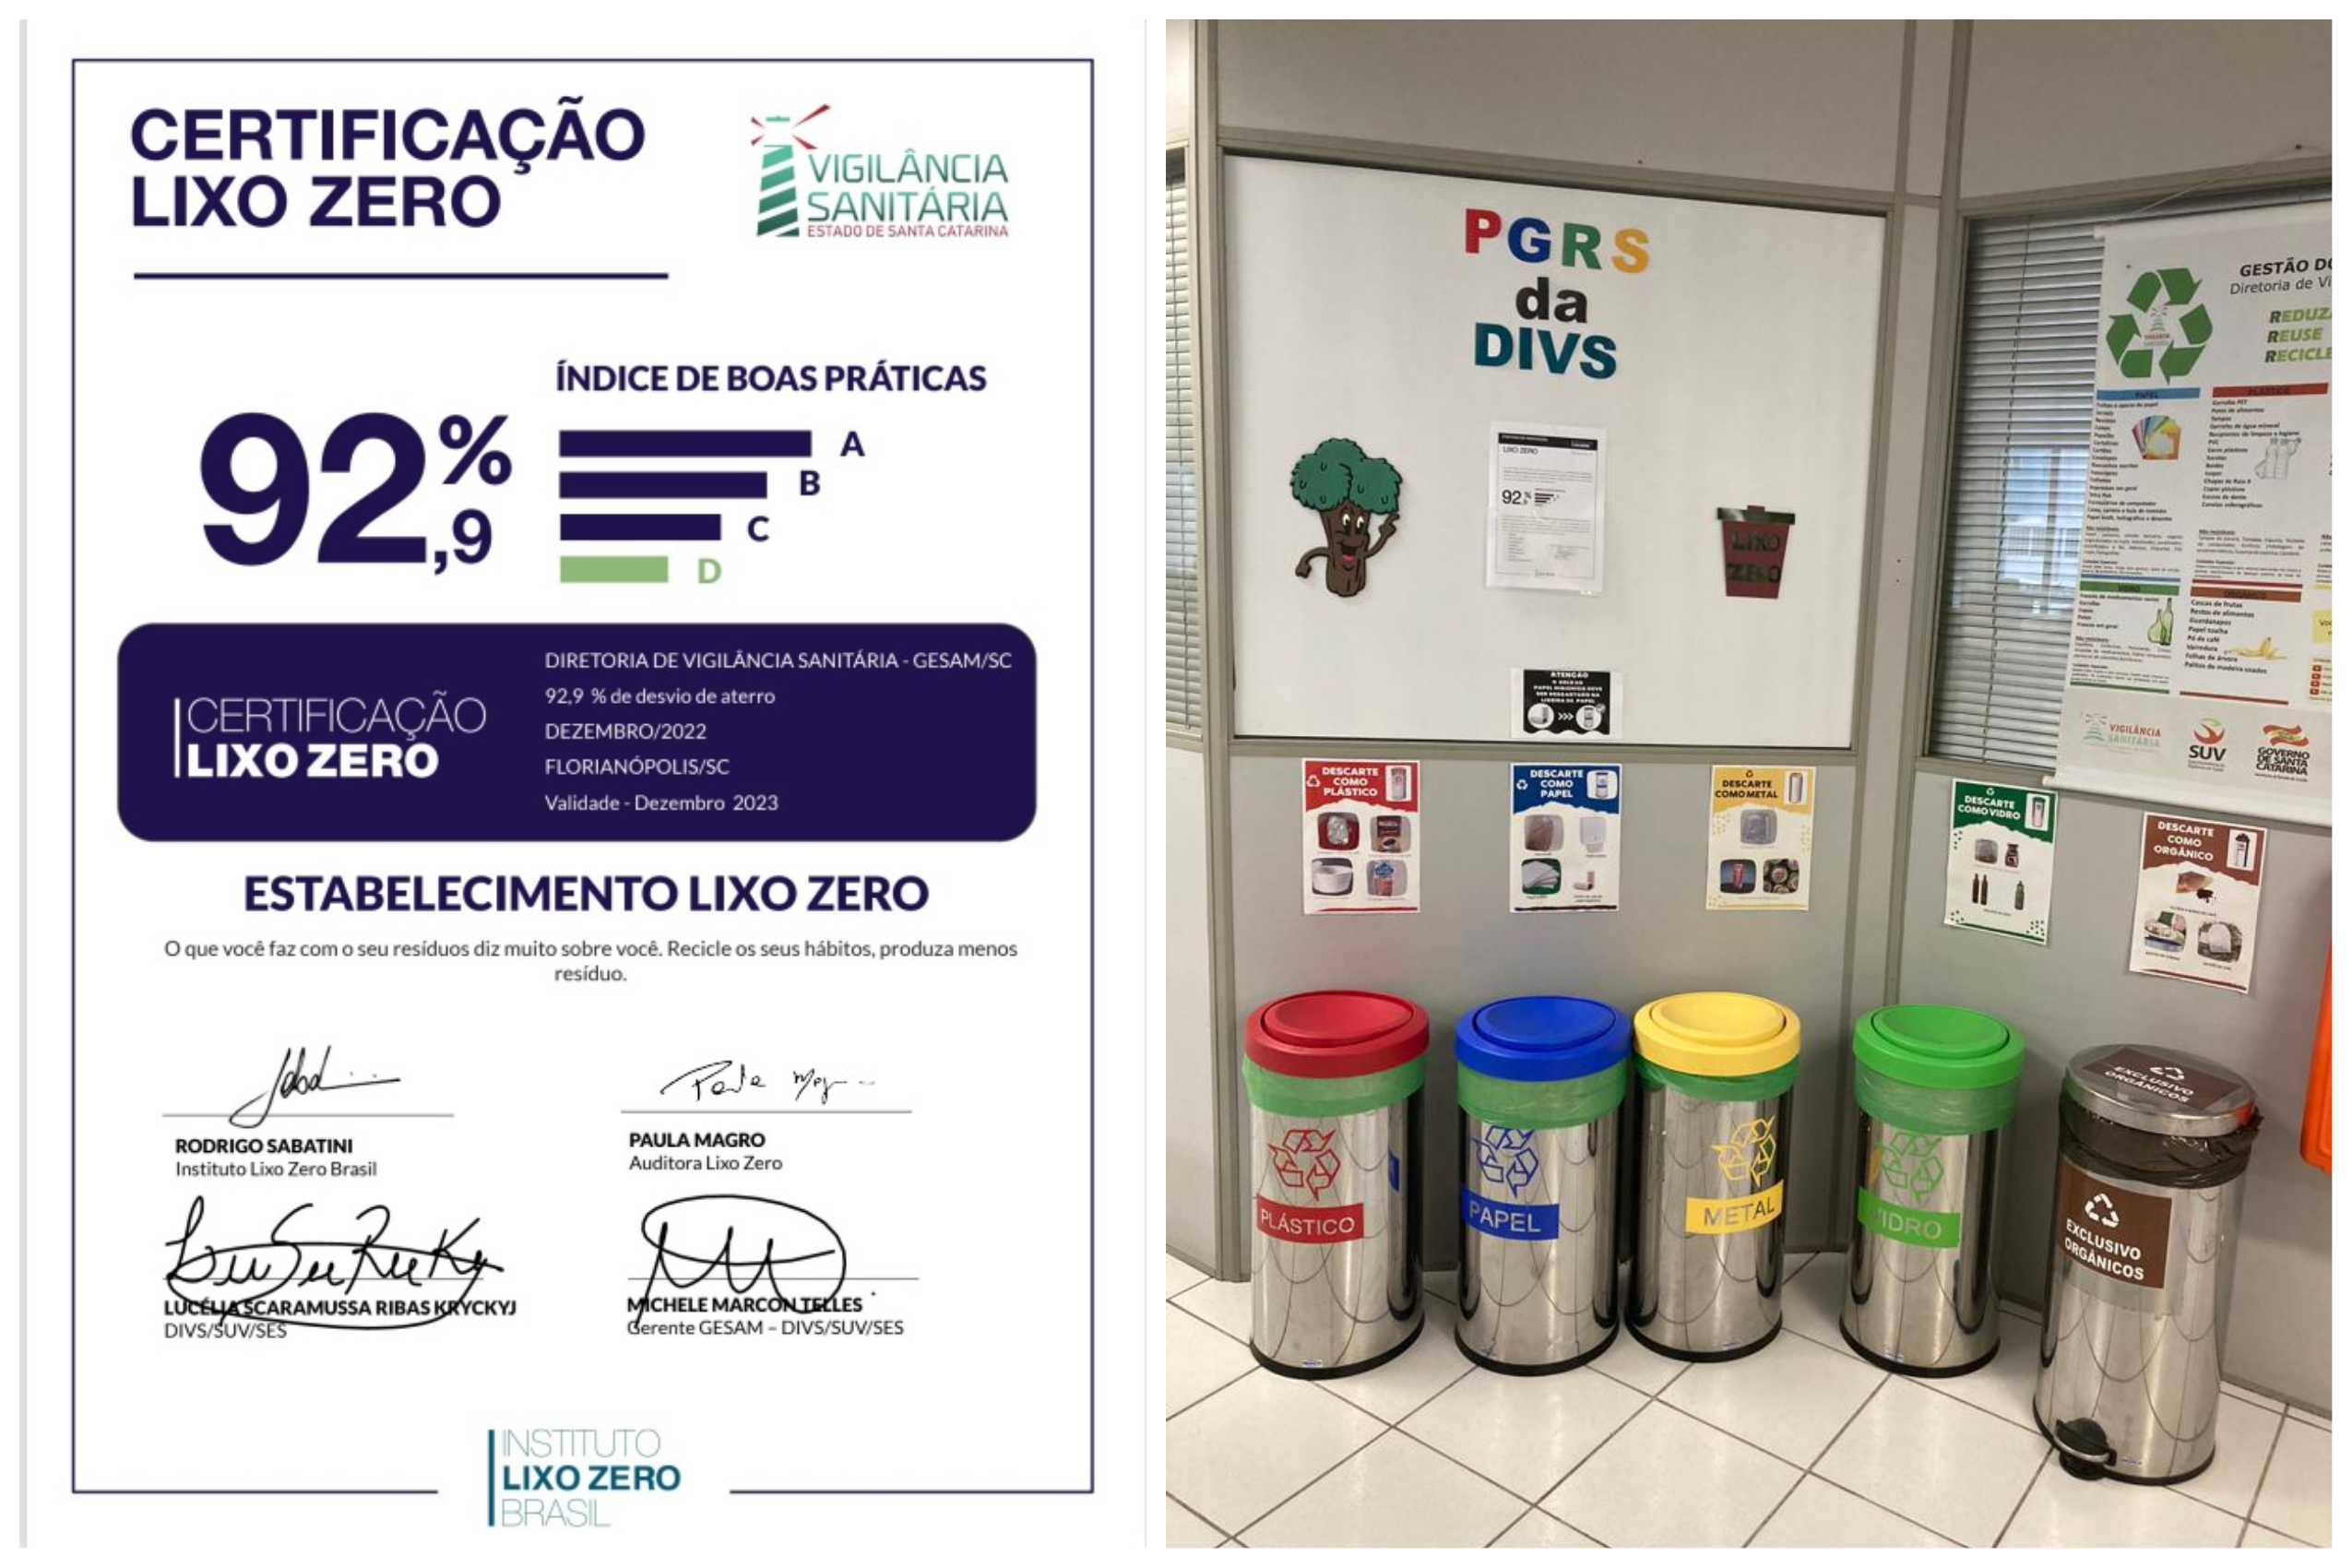 Brooks Ambiental: Primeira Empresa de Gerenciamento de Resíduos Lixo Zero  do Brasil - Certificação Lixo Zero